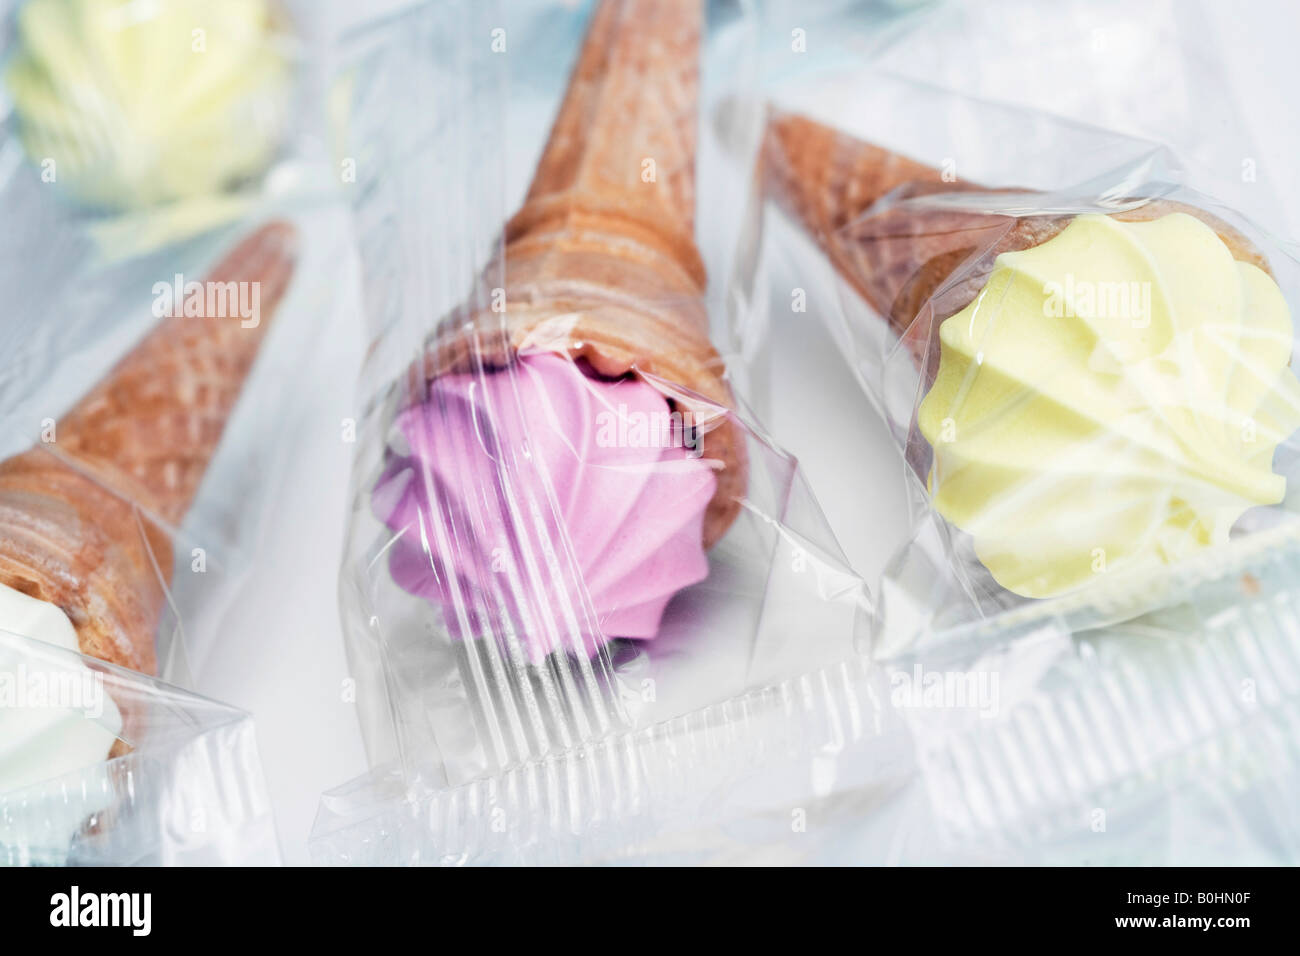 Mashmallow gofres con la forma de servir helados blandos en varios colores Foto de stock